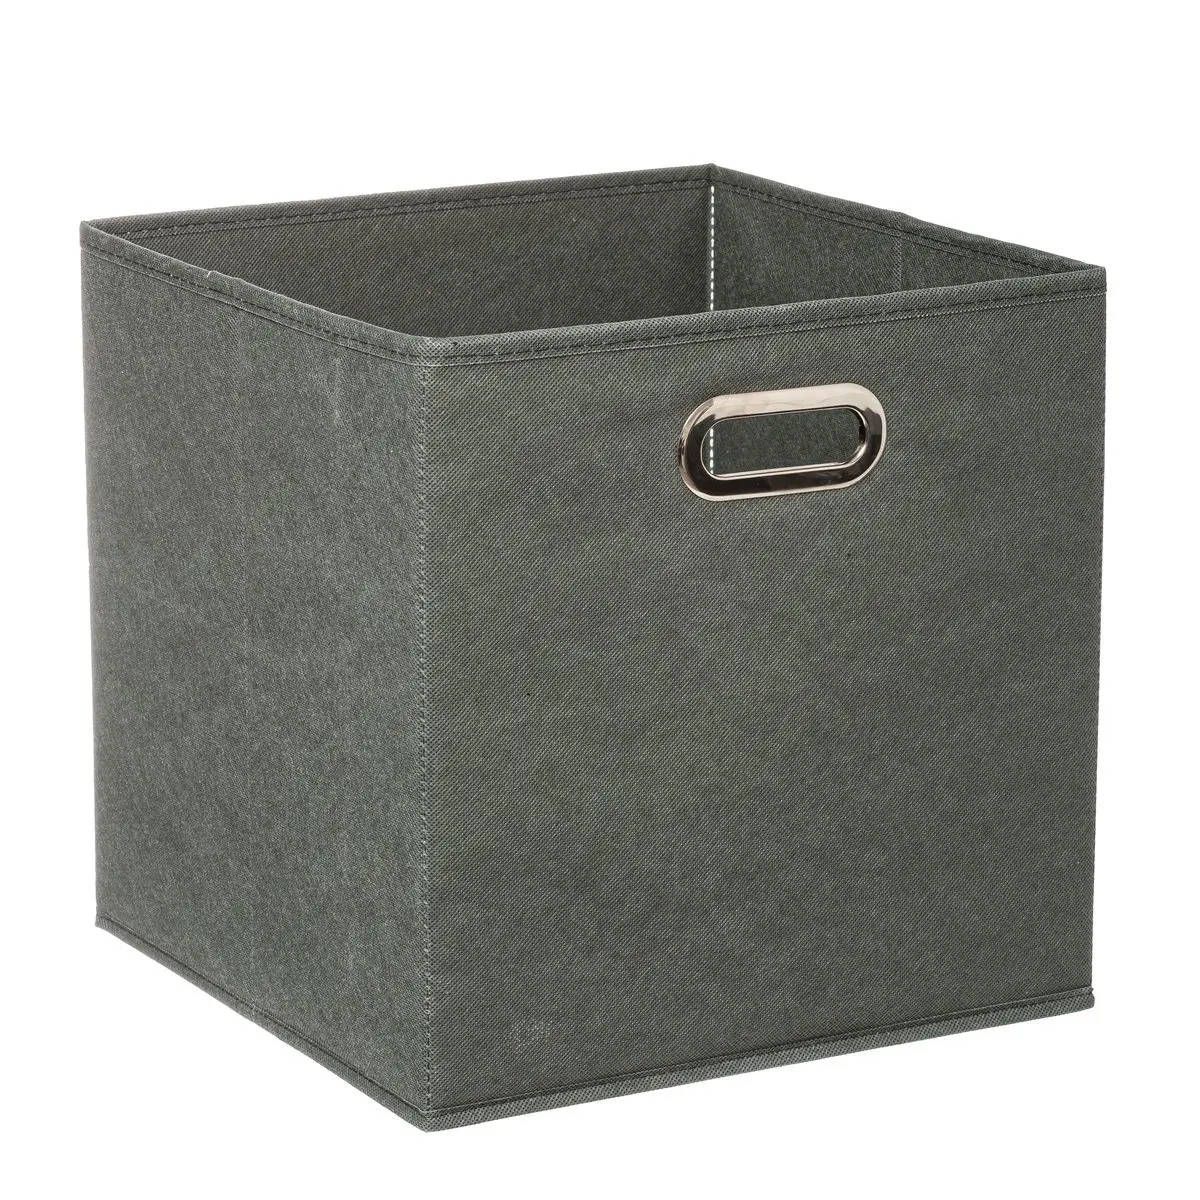 5five Simply Smart Úložný box, šedý, textilní, 31 x 31 cm - EDAXO.CZ s.r.o.